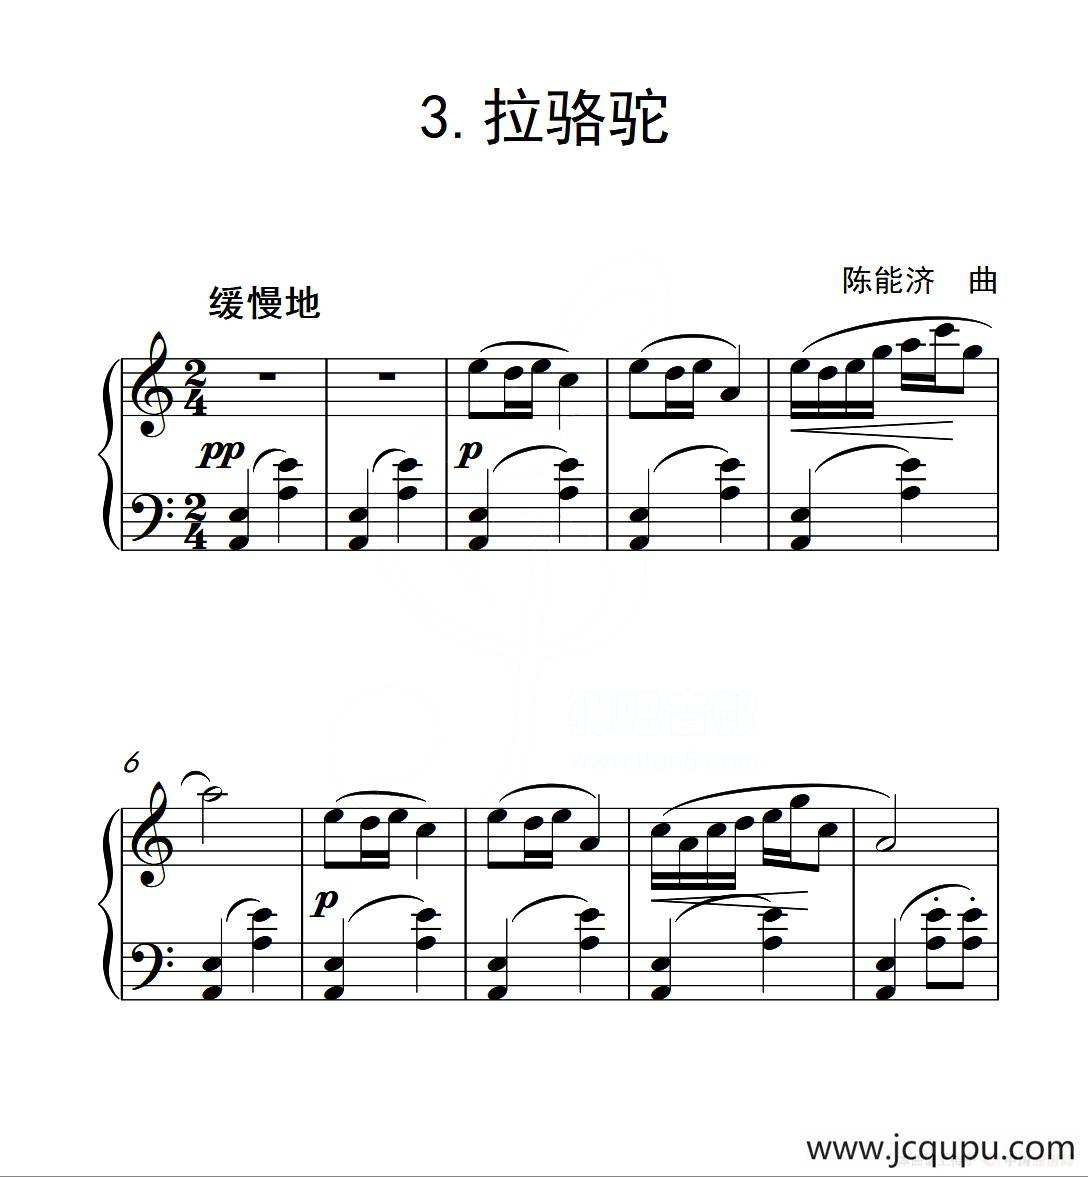 中国音乐学院钢琴考级曲目要求(中国音乐学院钢琴考级曲目要求2022年)